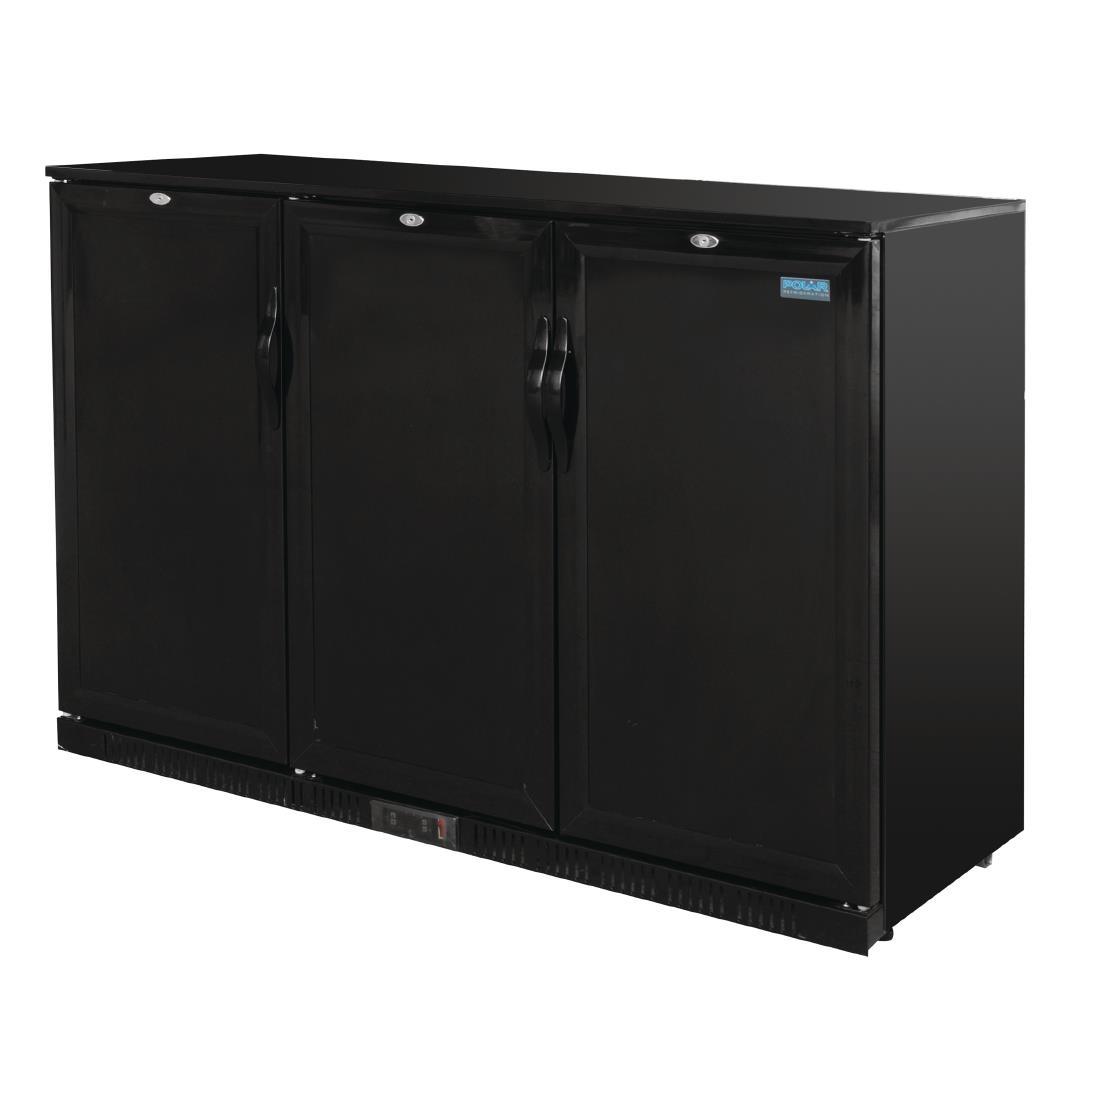 Polar G-Series 900mm Triple Solid Door Back Bar Cooler in Black 330Ltr - GL017  - 2